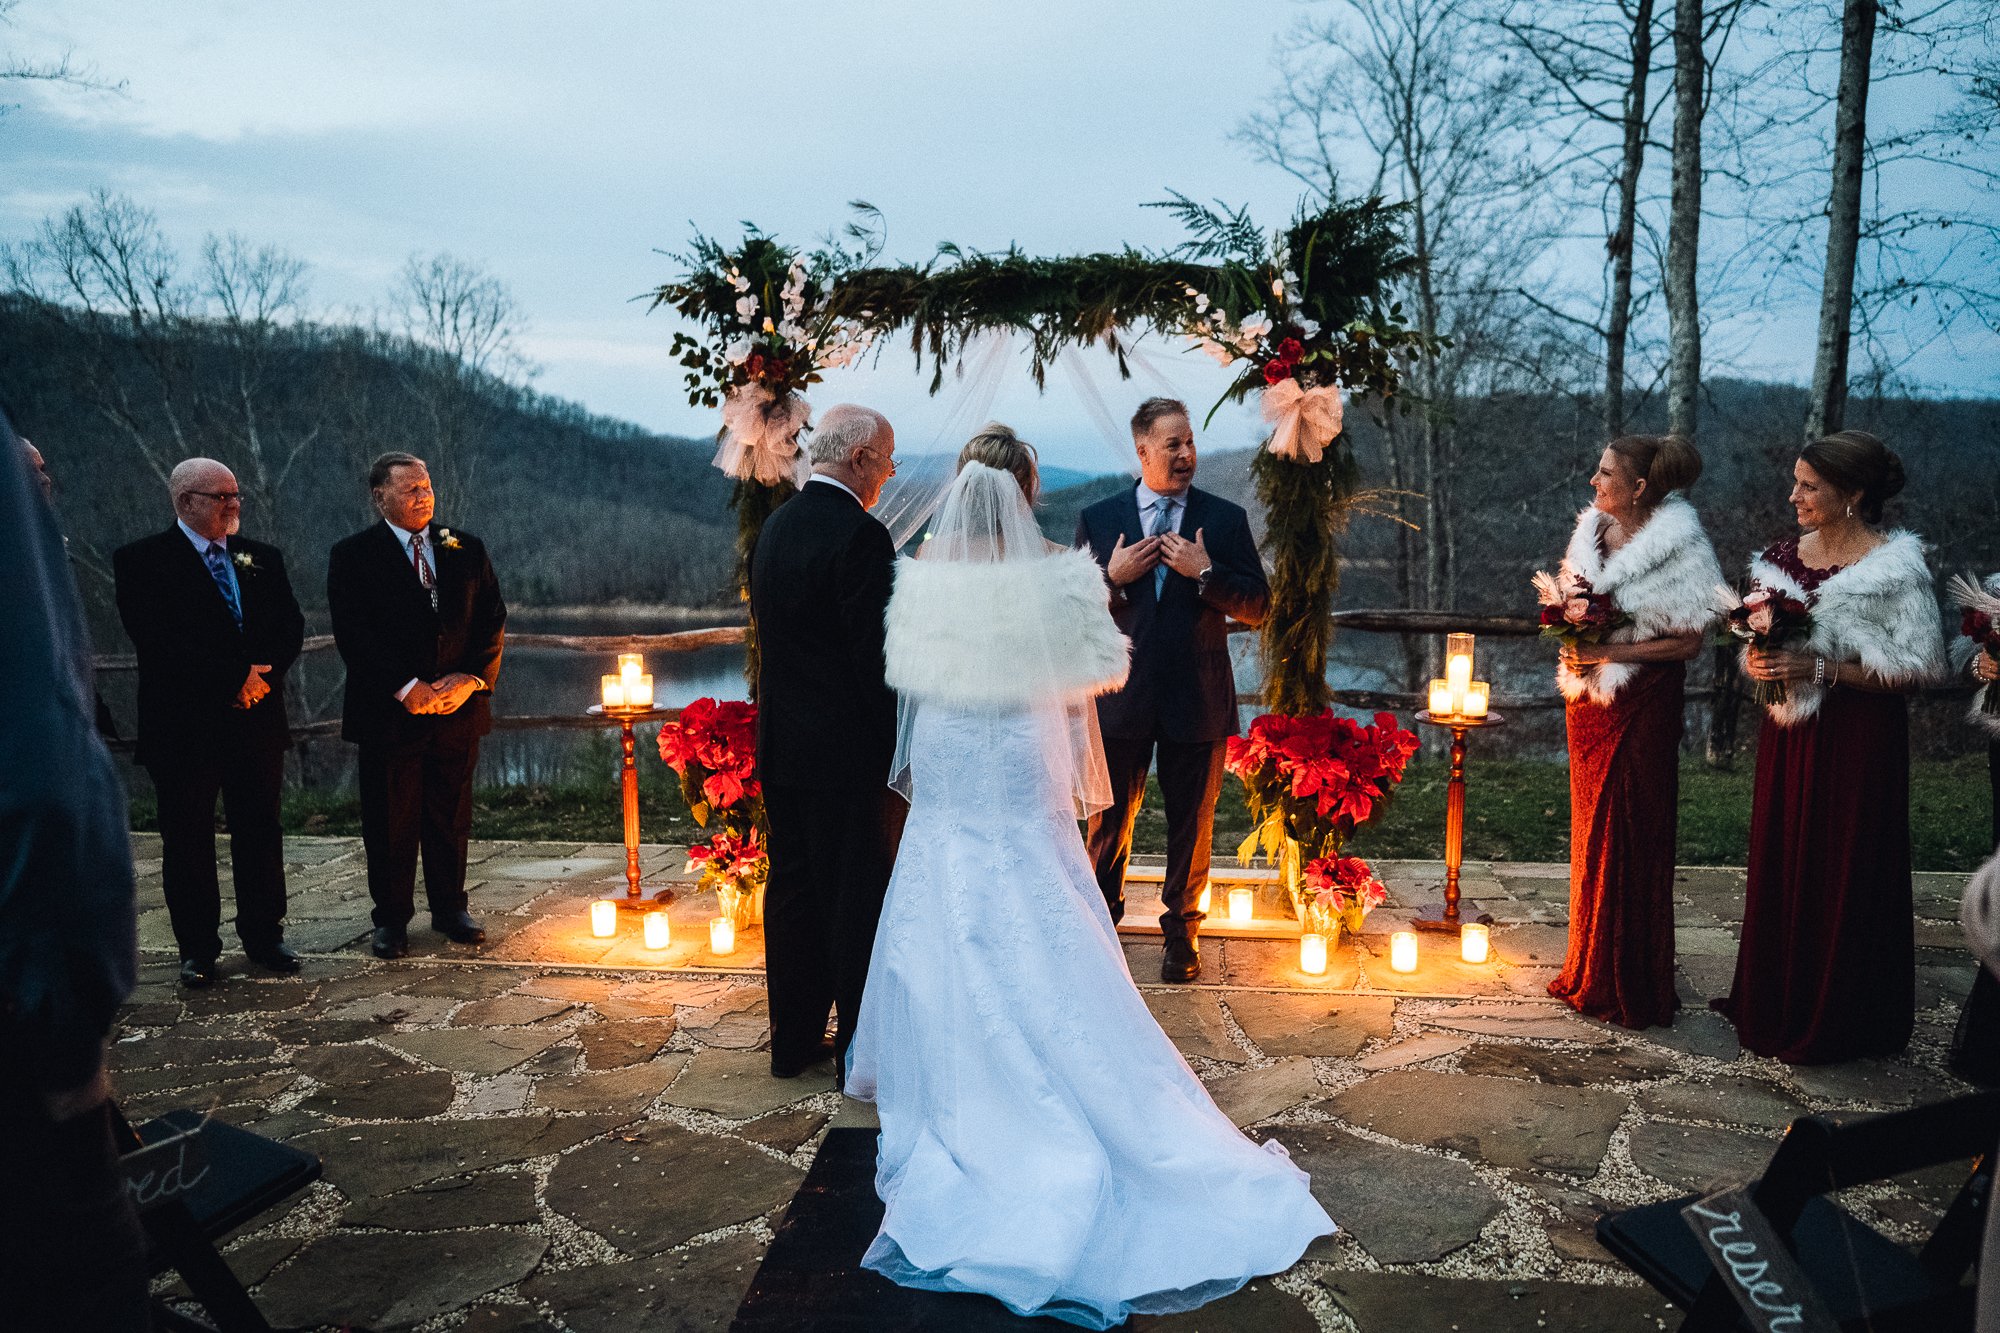 Ceremony at dusk in Nantahala North Carolina